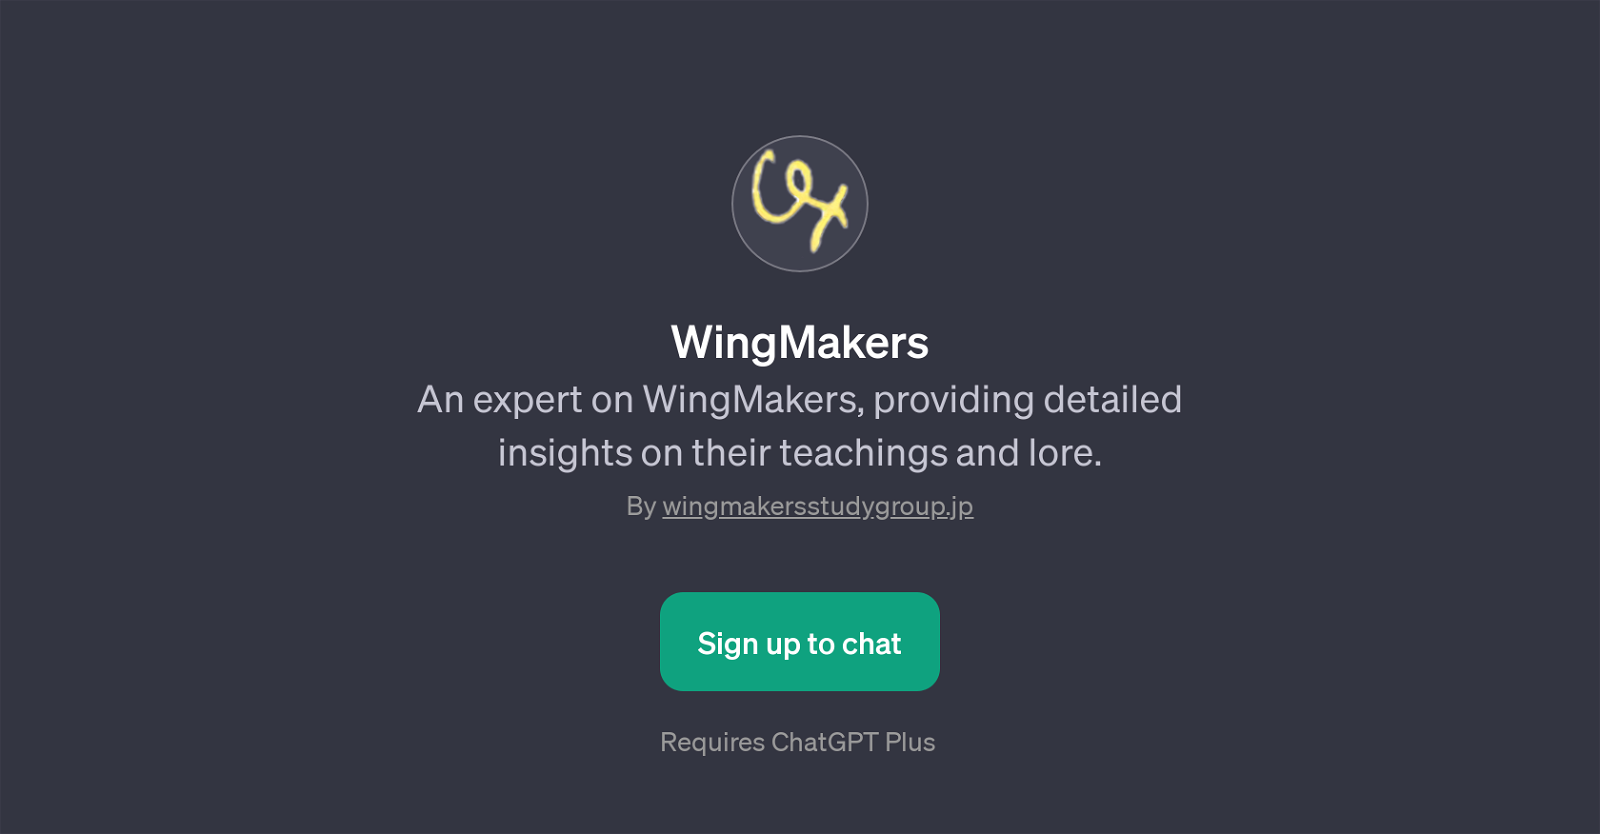 WingMakers website